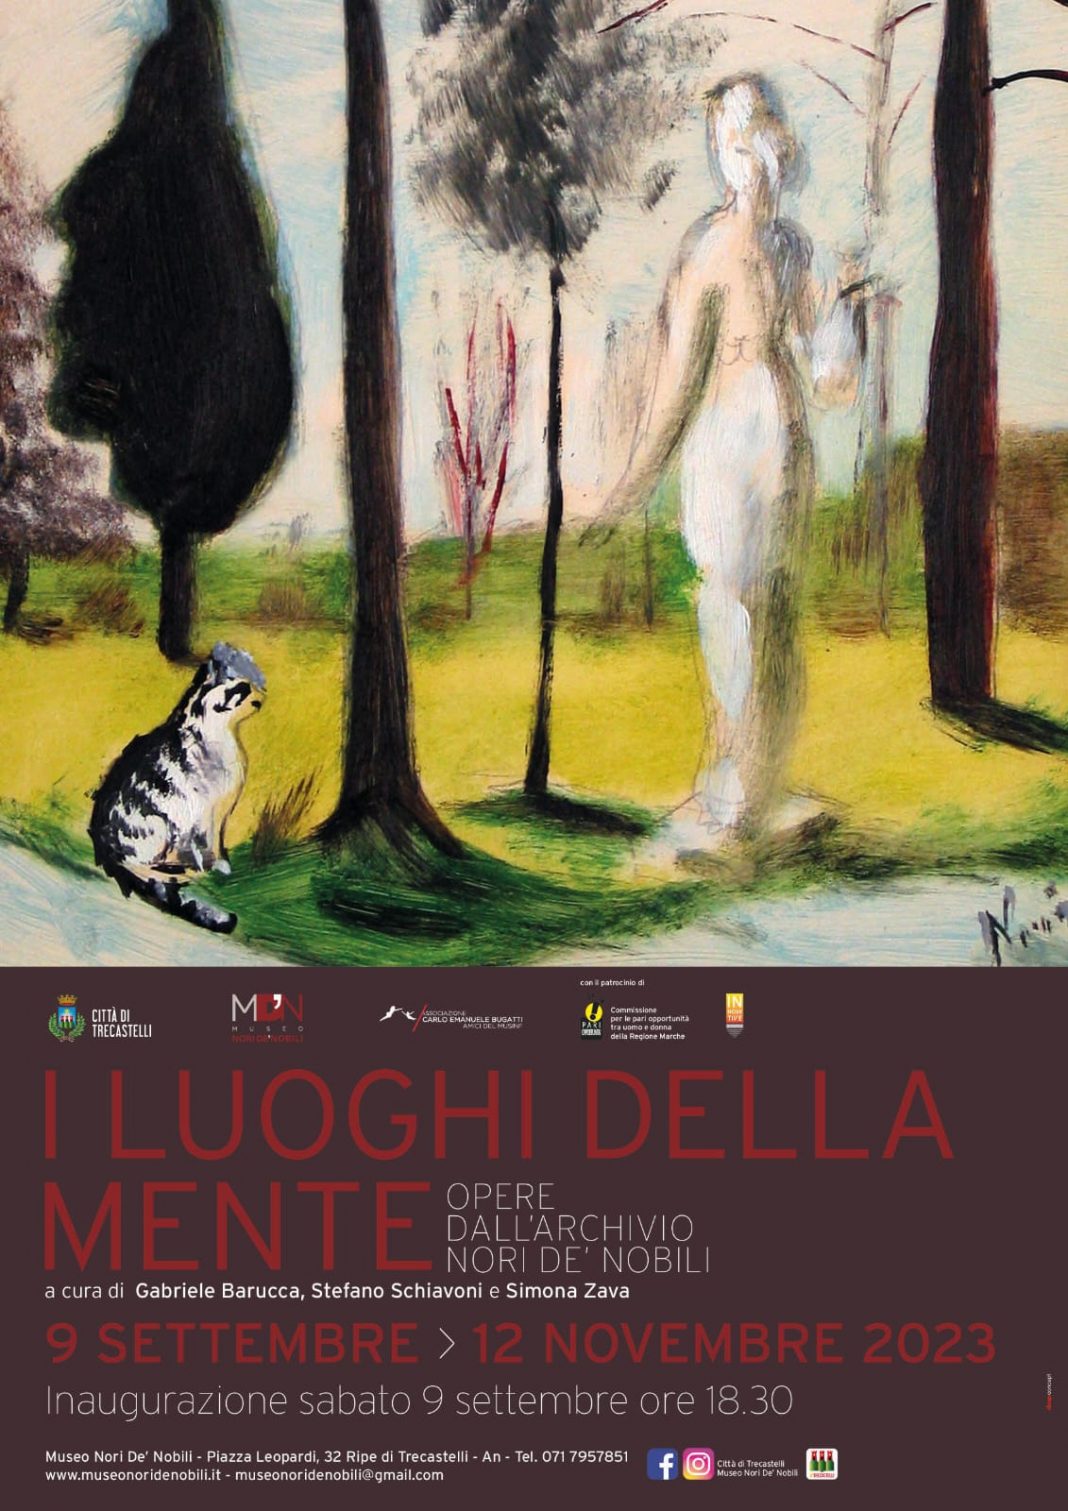 I Luoghi della Mente – Opere dall’Archivio Nori De’ Nobilihttps://www.exibart.com/repository/media/formidable/11/img/f4d/Volantino-I-Luoghi-della-Mente-Opere-dallArchivio-Nori-De-Nobili-1068x1511.jpg